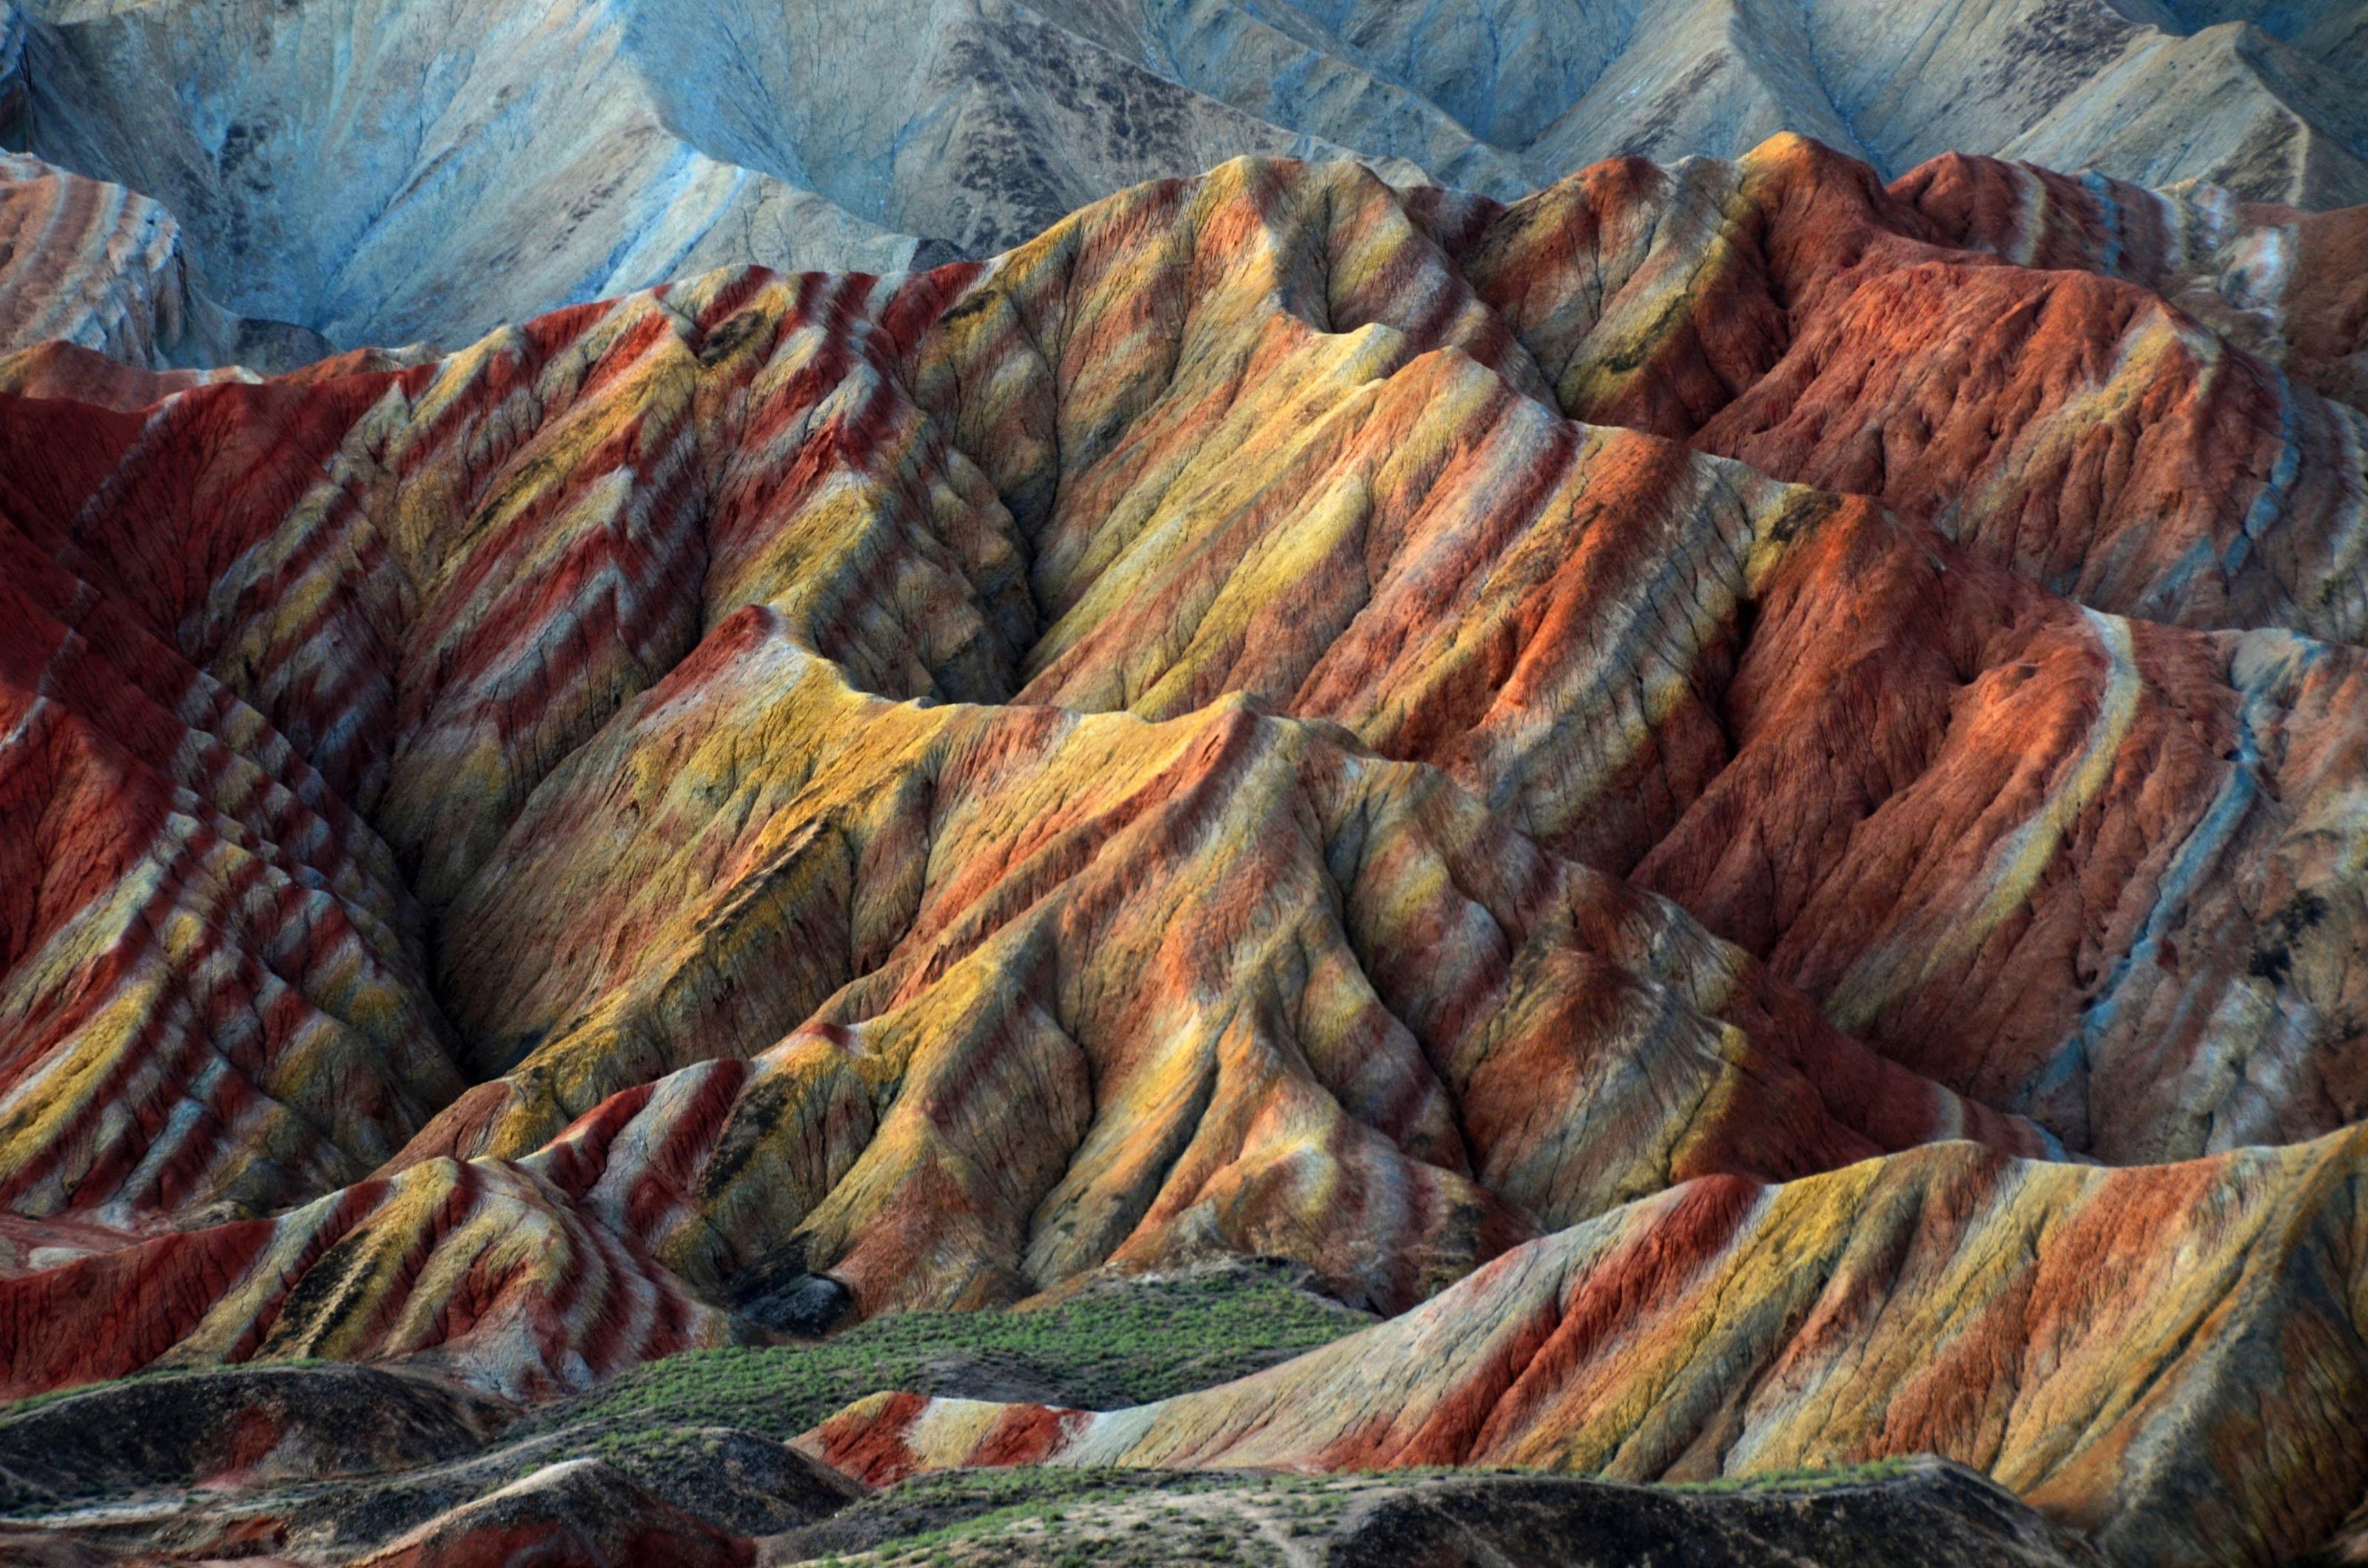 Основные горы китая. Ландшафт Дэнксия Китай. Разноцветные скалы Чжанъе Данься. Ландшафт Дэнксия (Danxia landform), Китай. Чжанъе Данься, Китай.